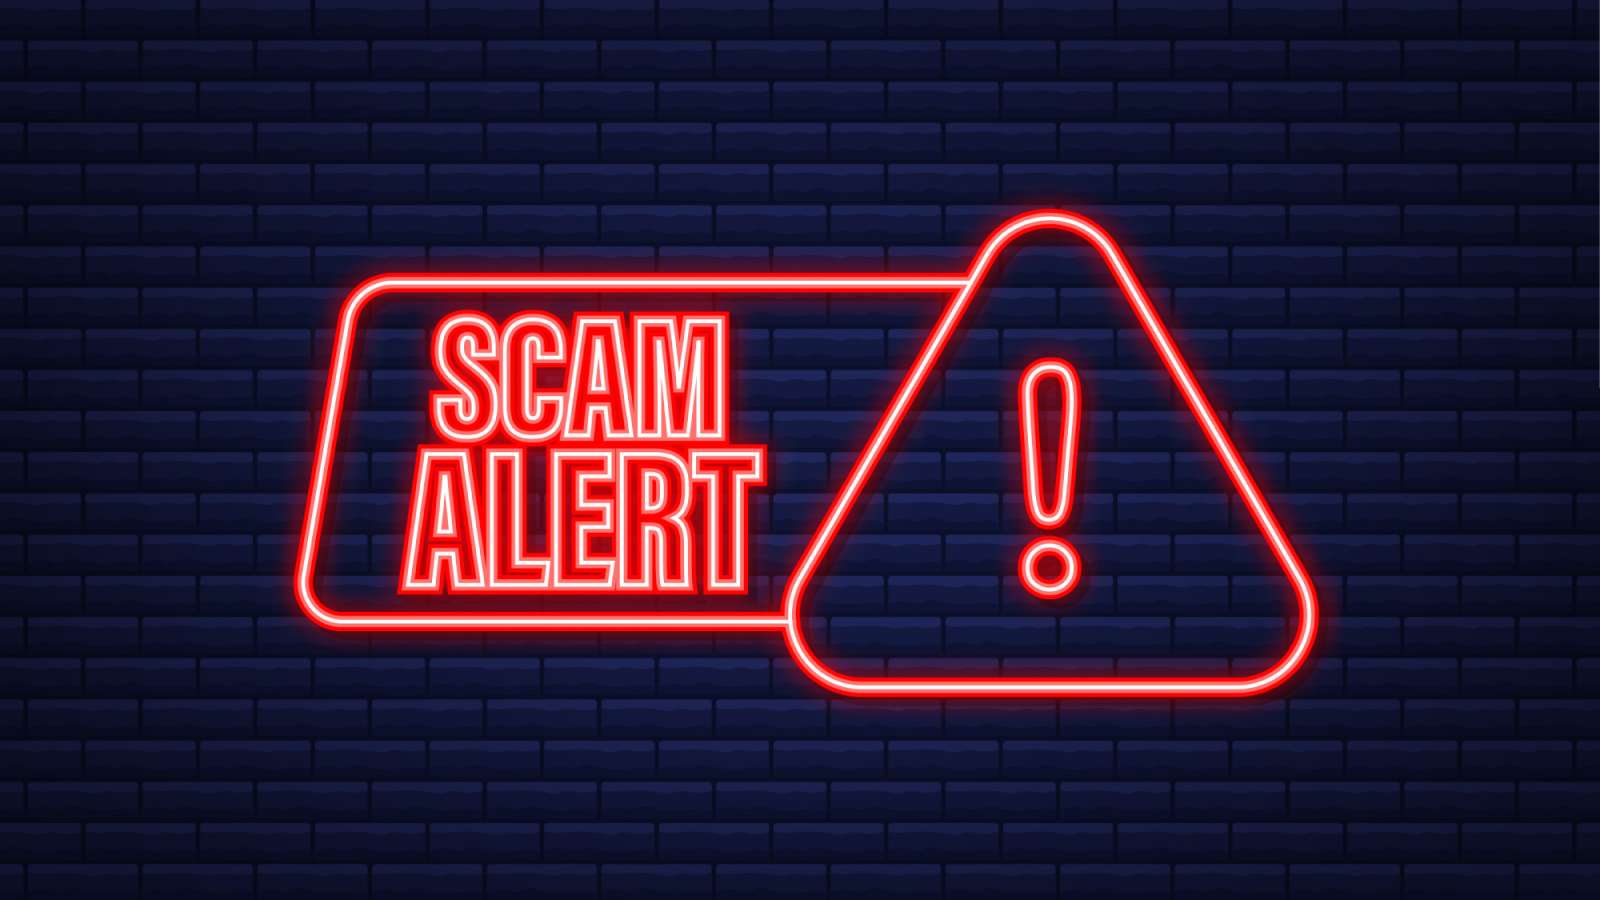 scam alert neon sign